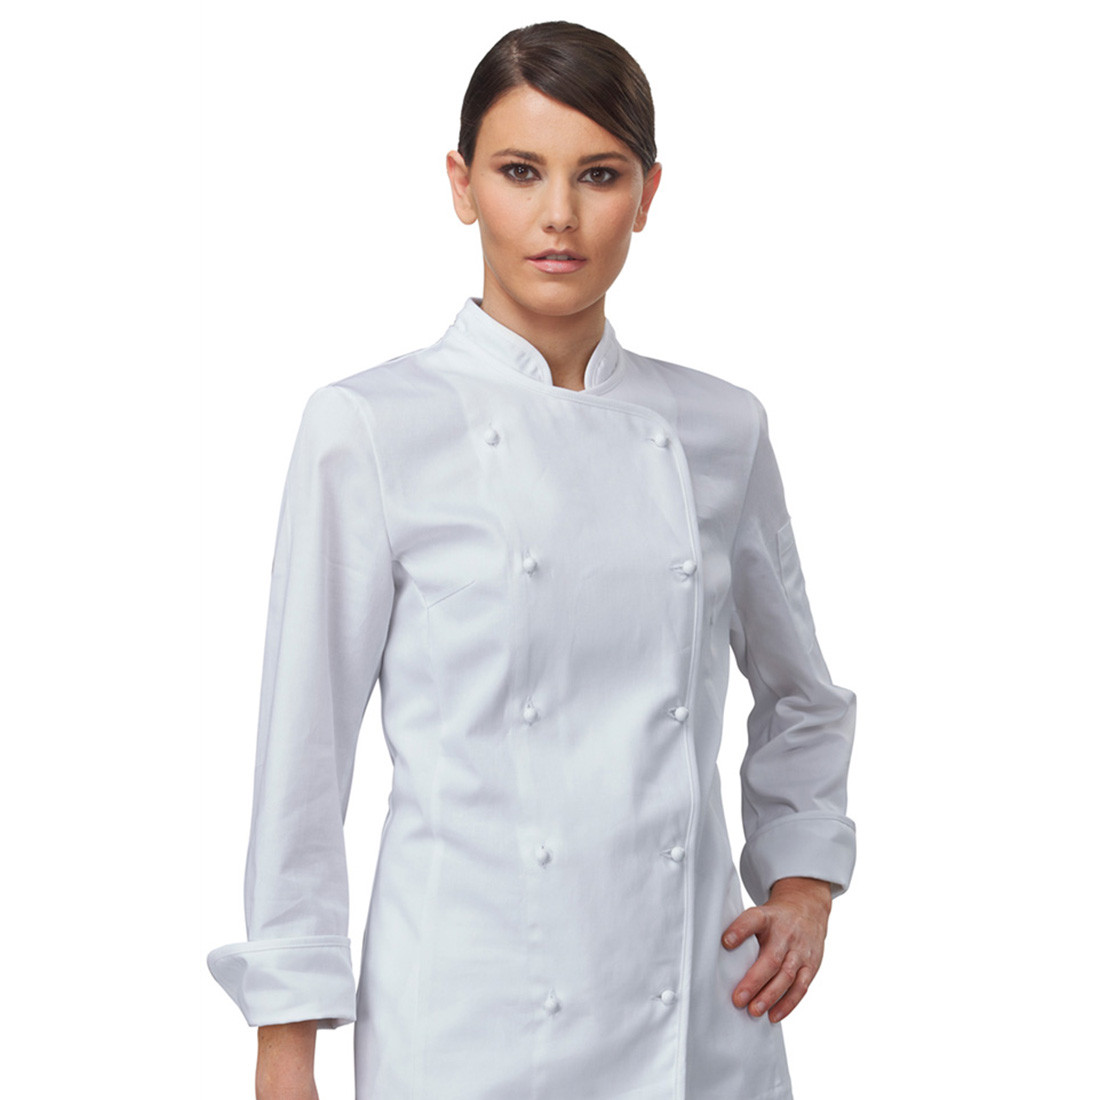 Giacca chef AMABEL - Abbigliamento di protezione